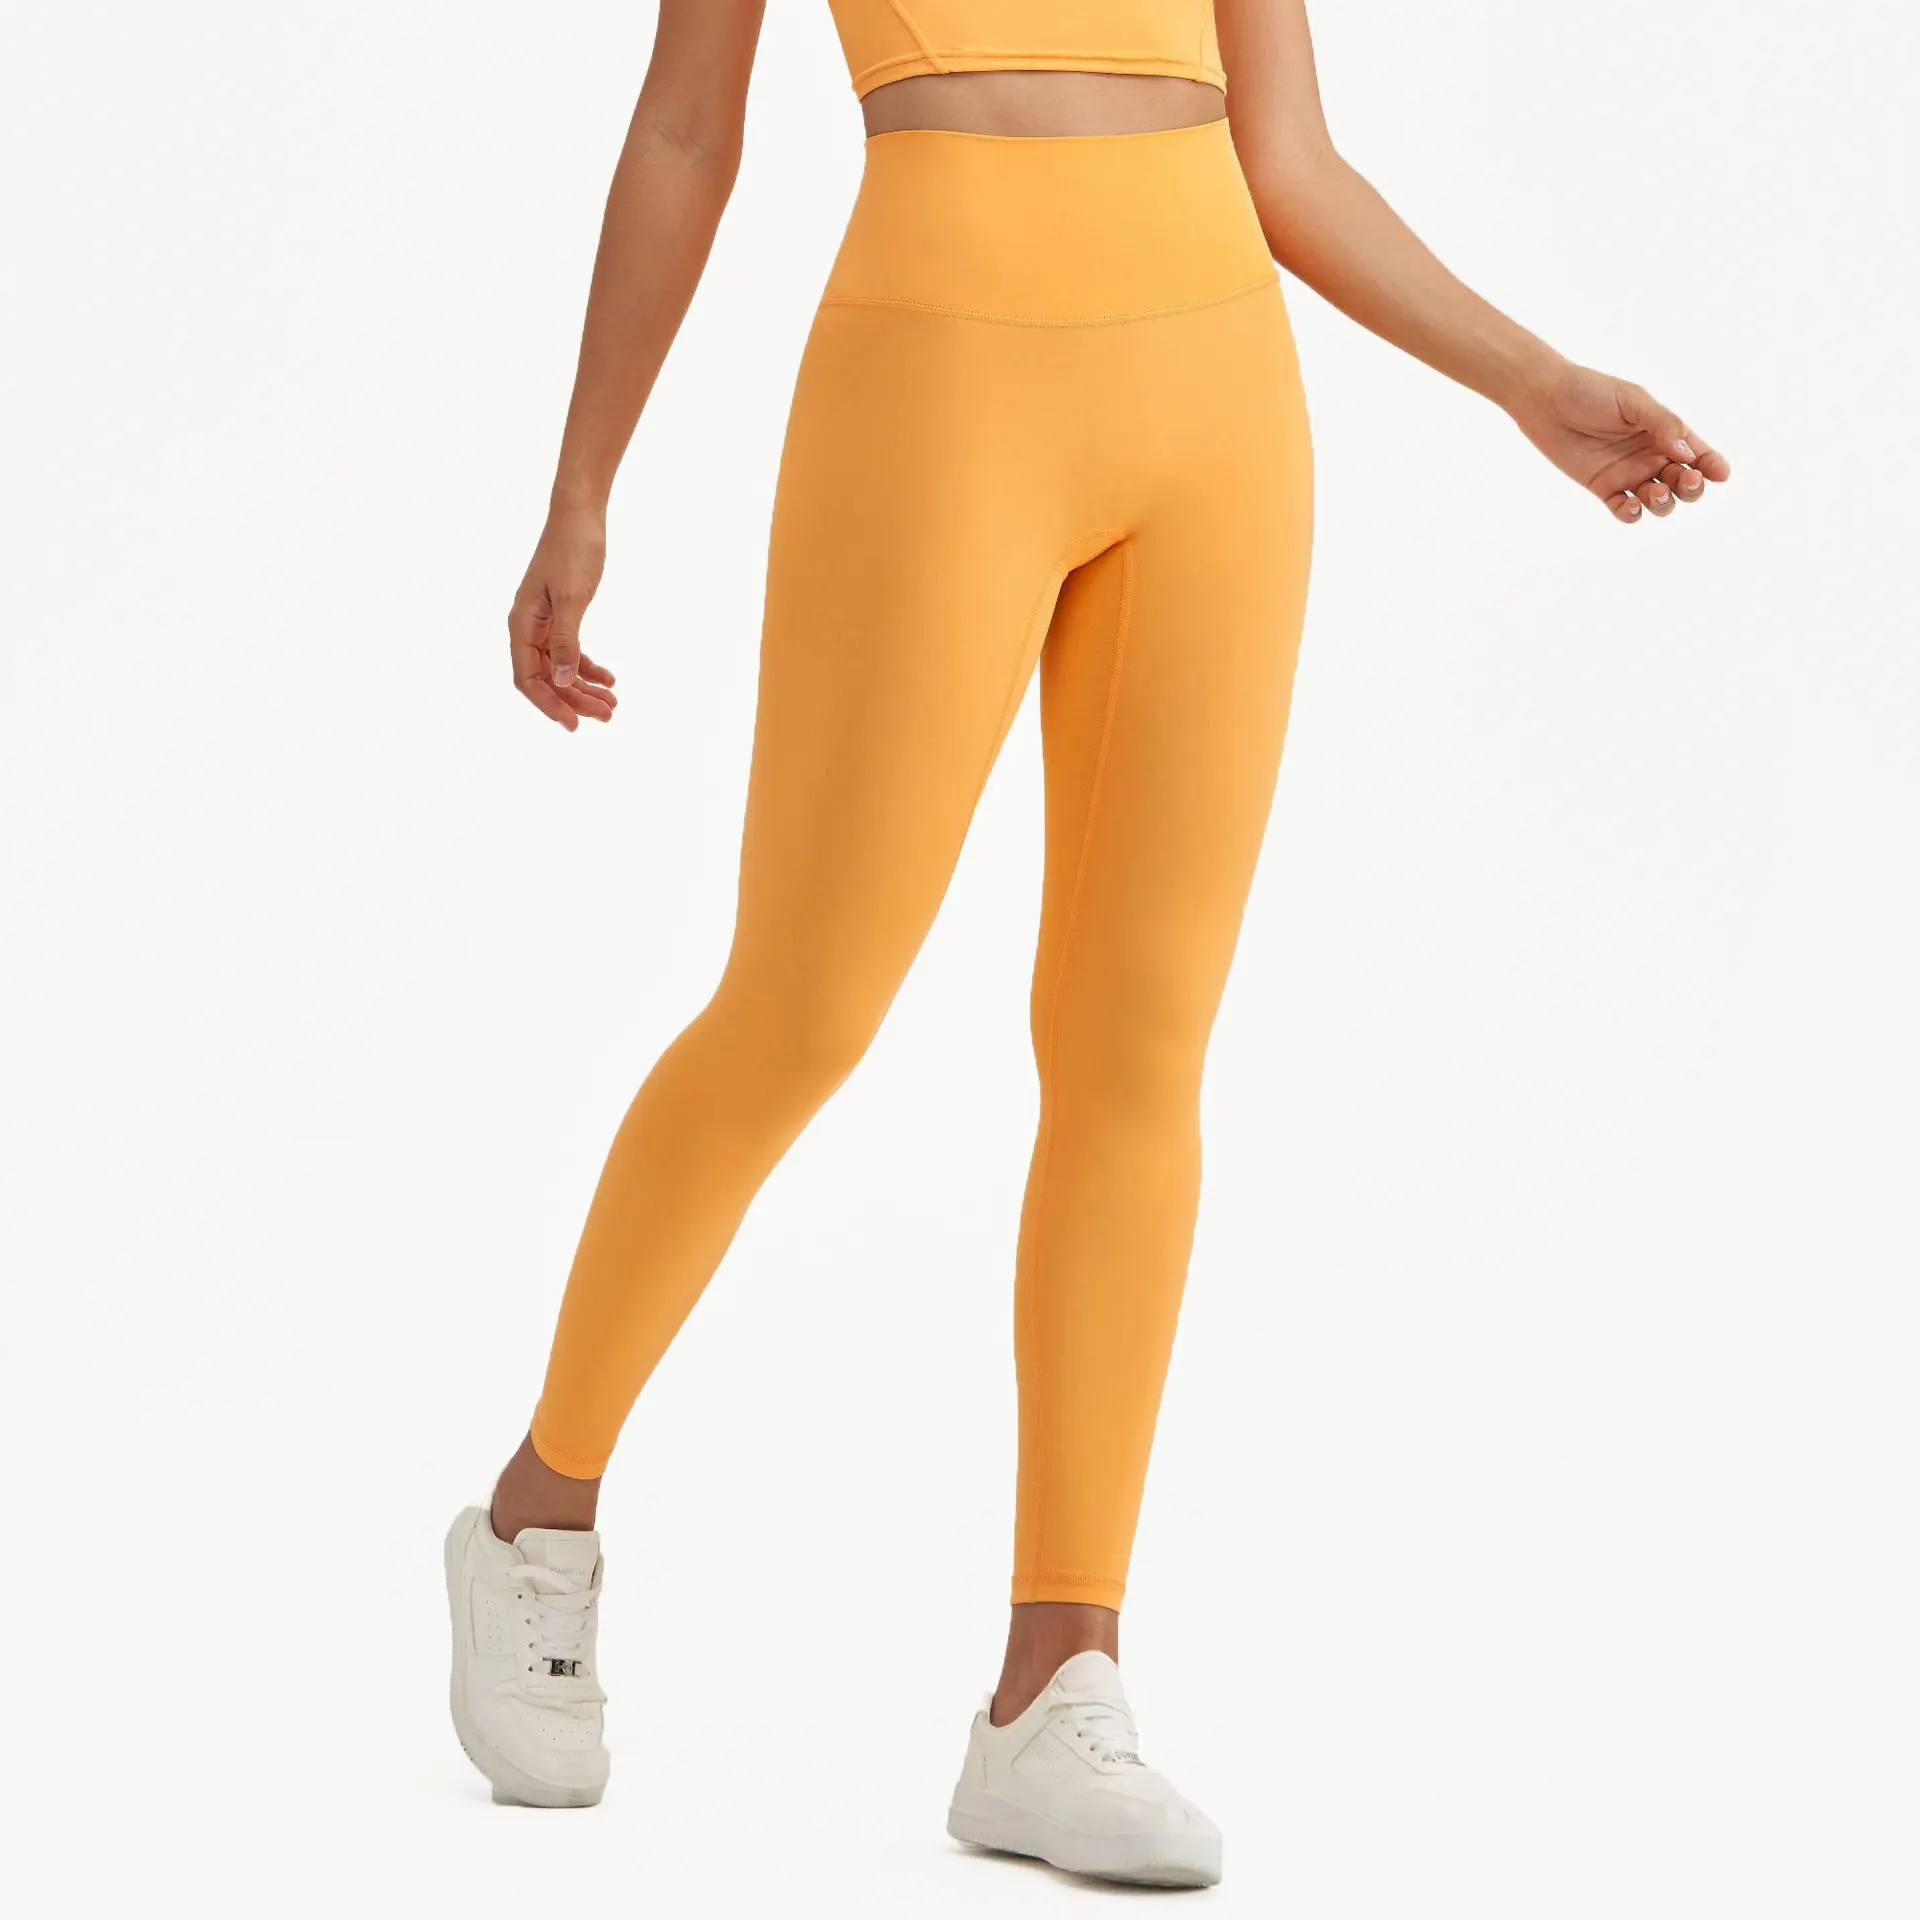 Calça esportiva sem costura frontal Super Soft para ioga, 24 cores, sem transparência, para mulheres, cintura alta